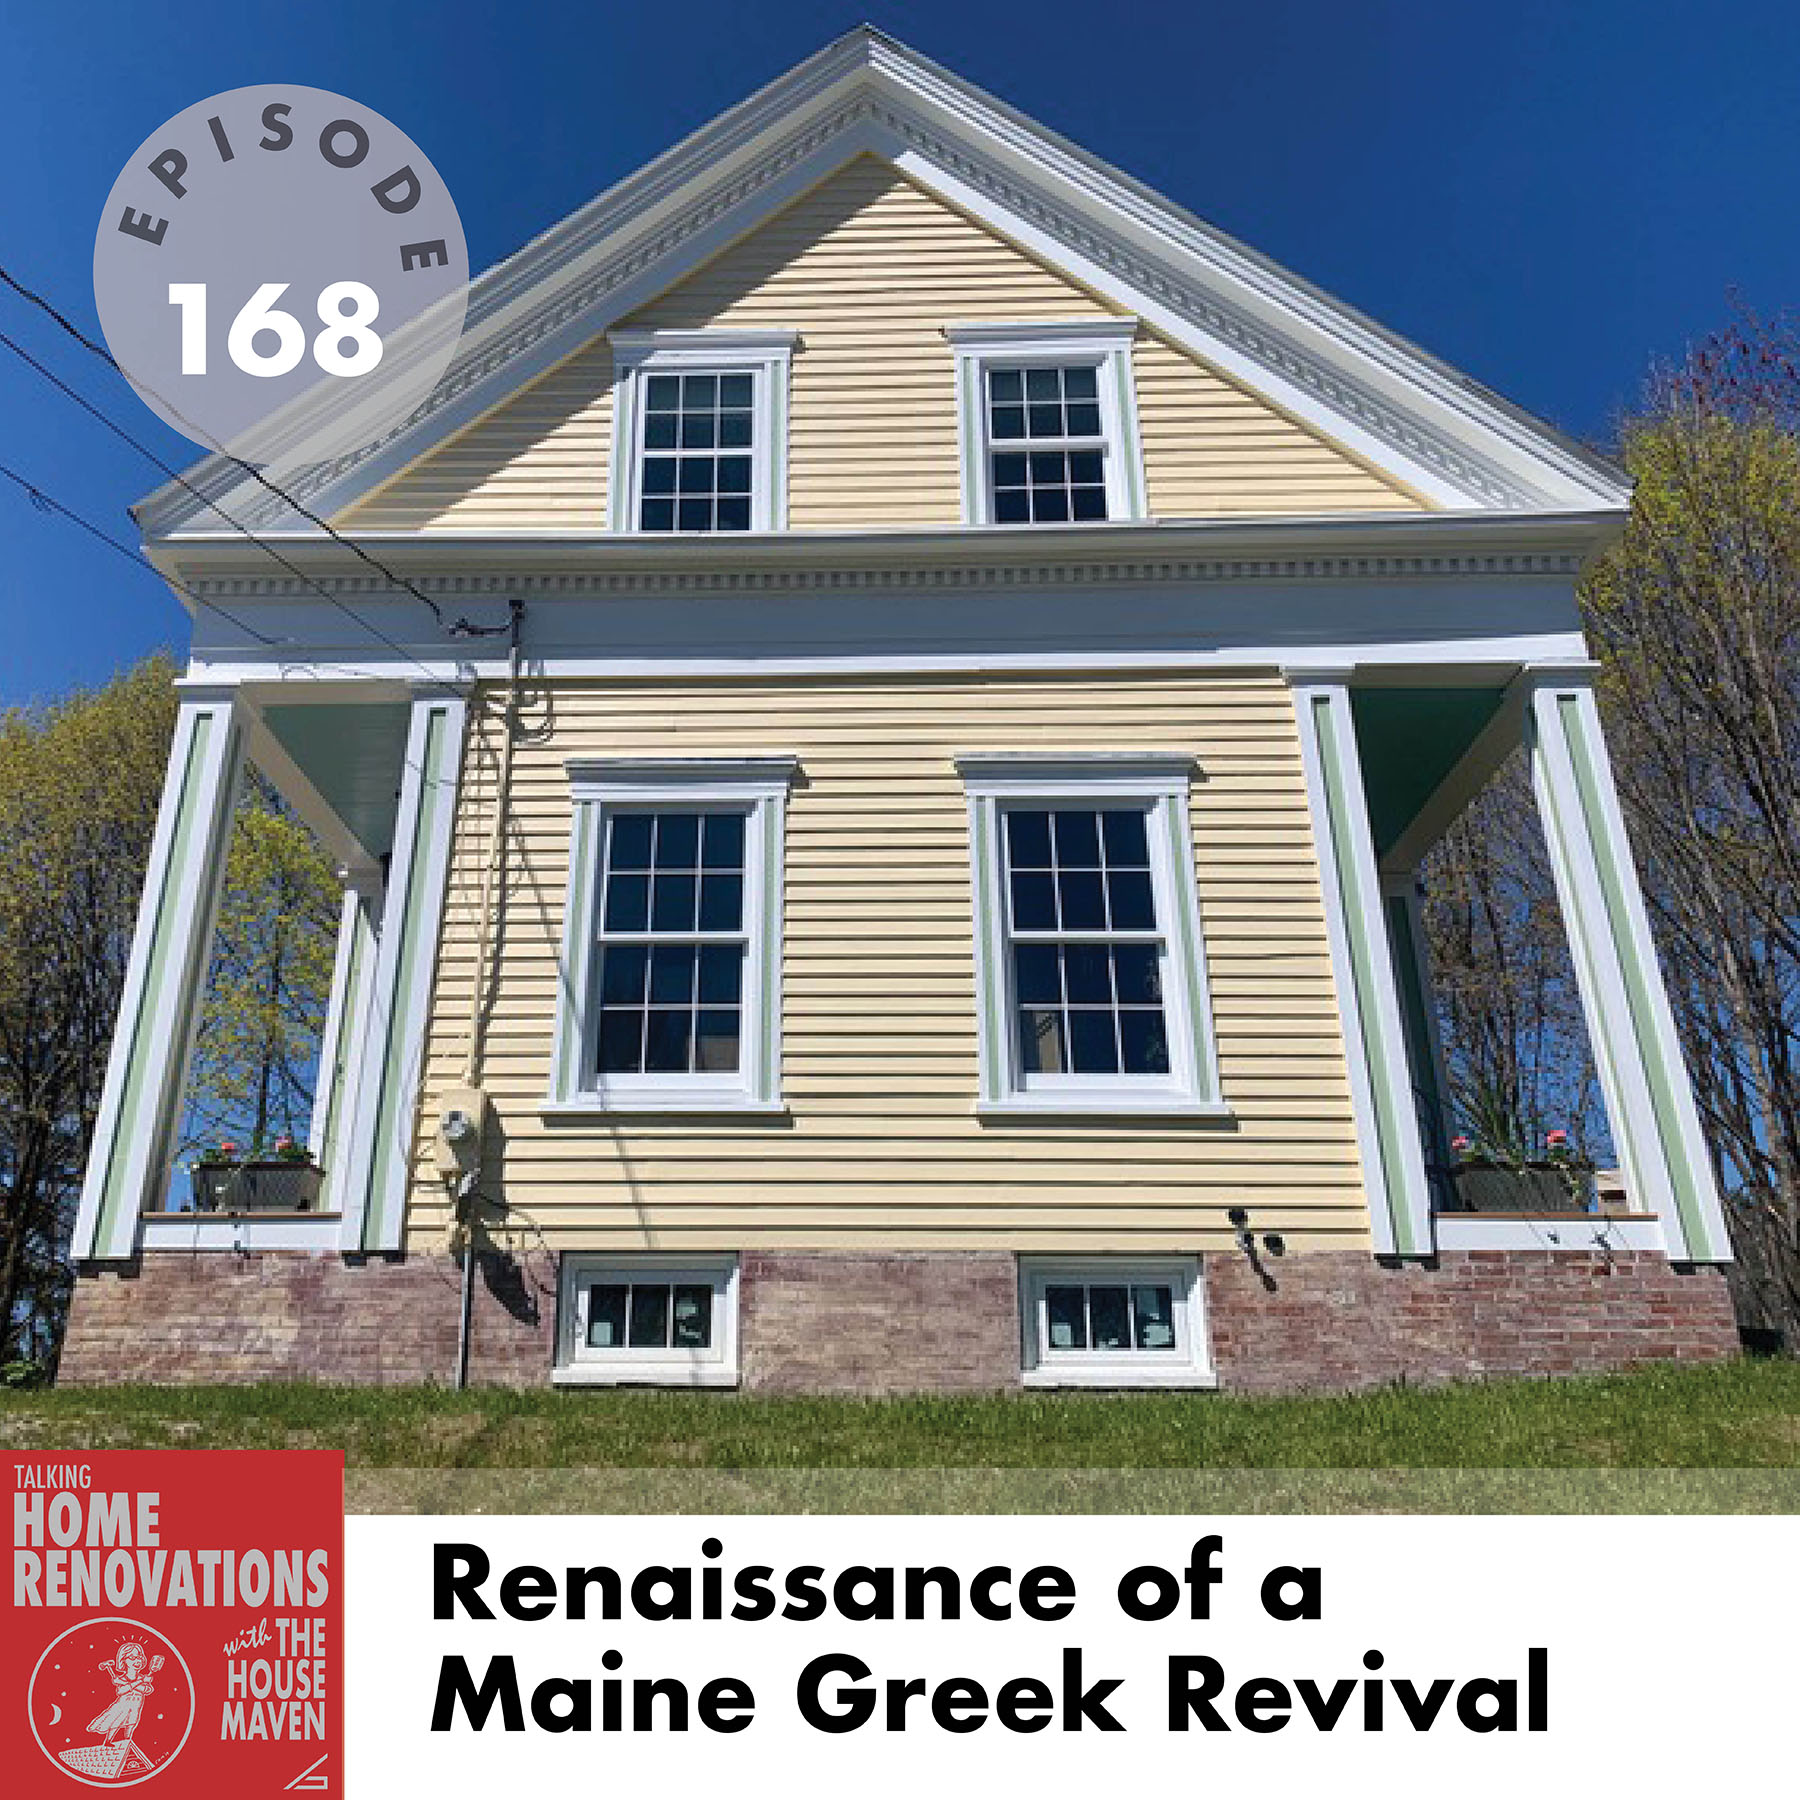 Renaissance of a Maine Greek Revival